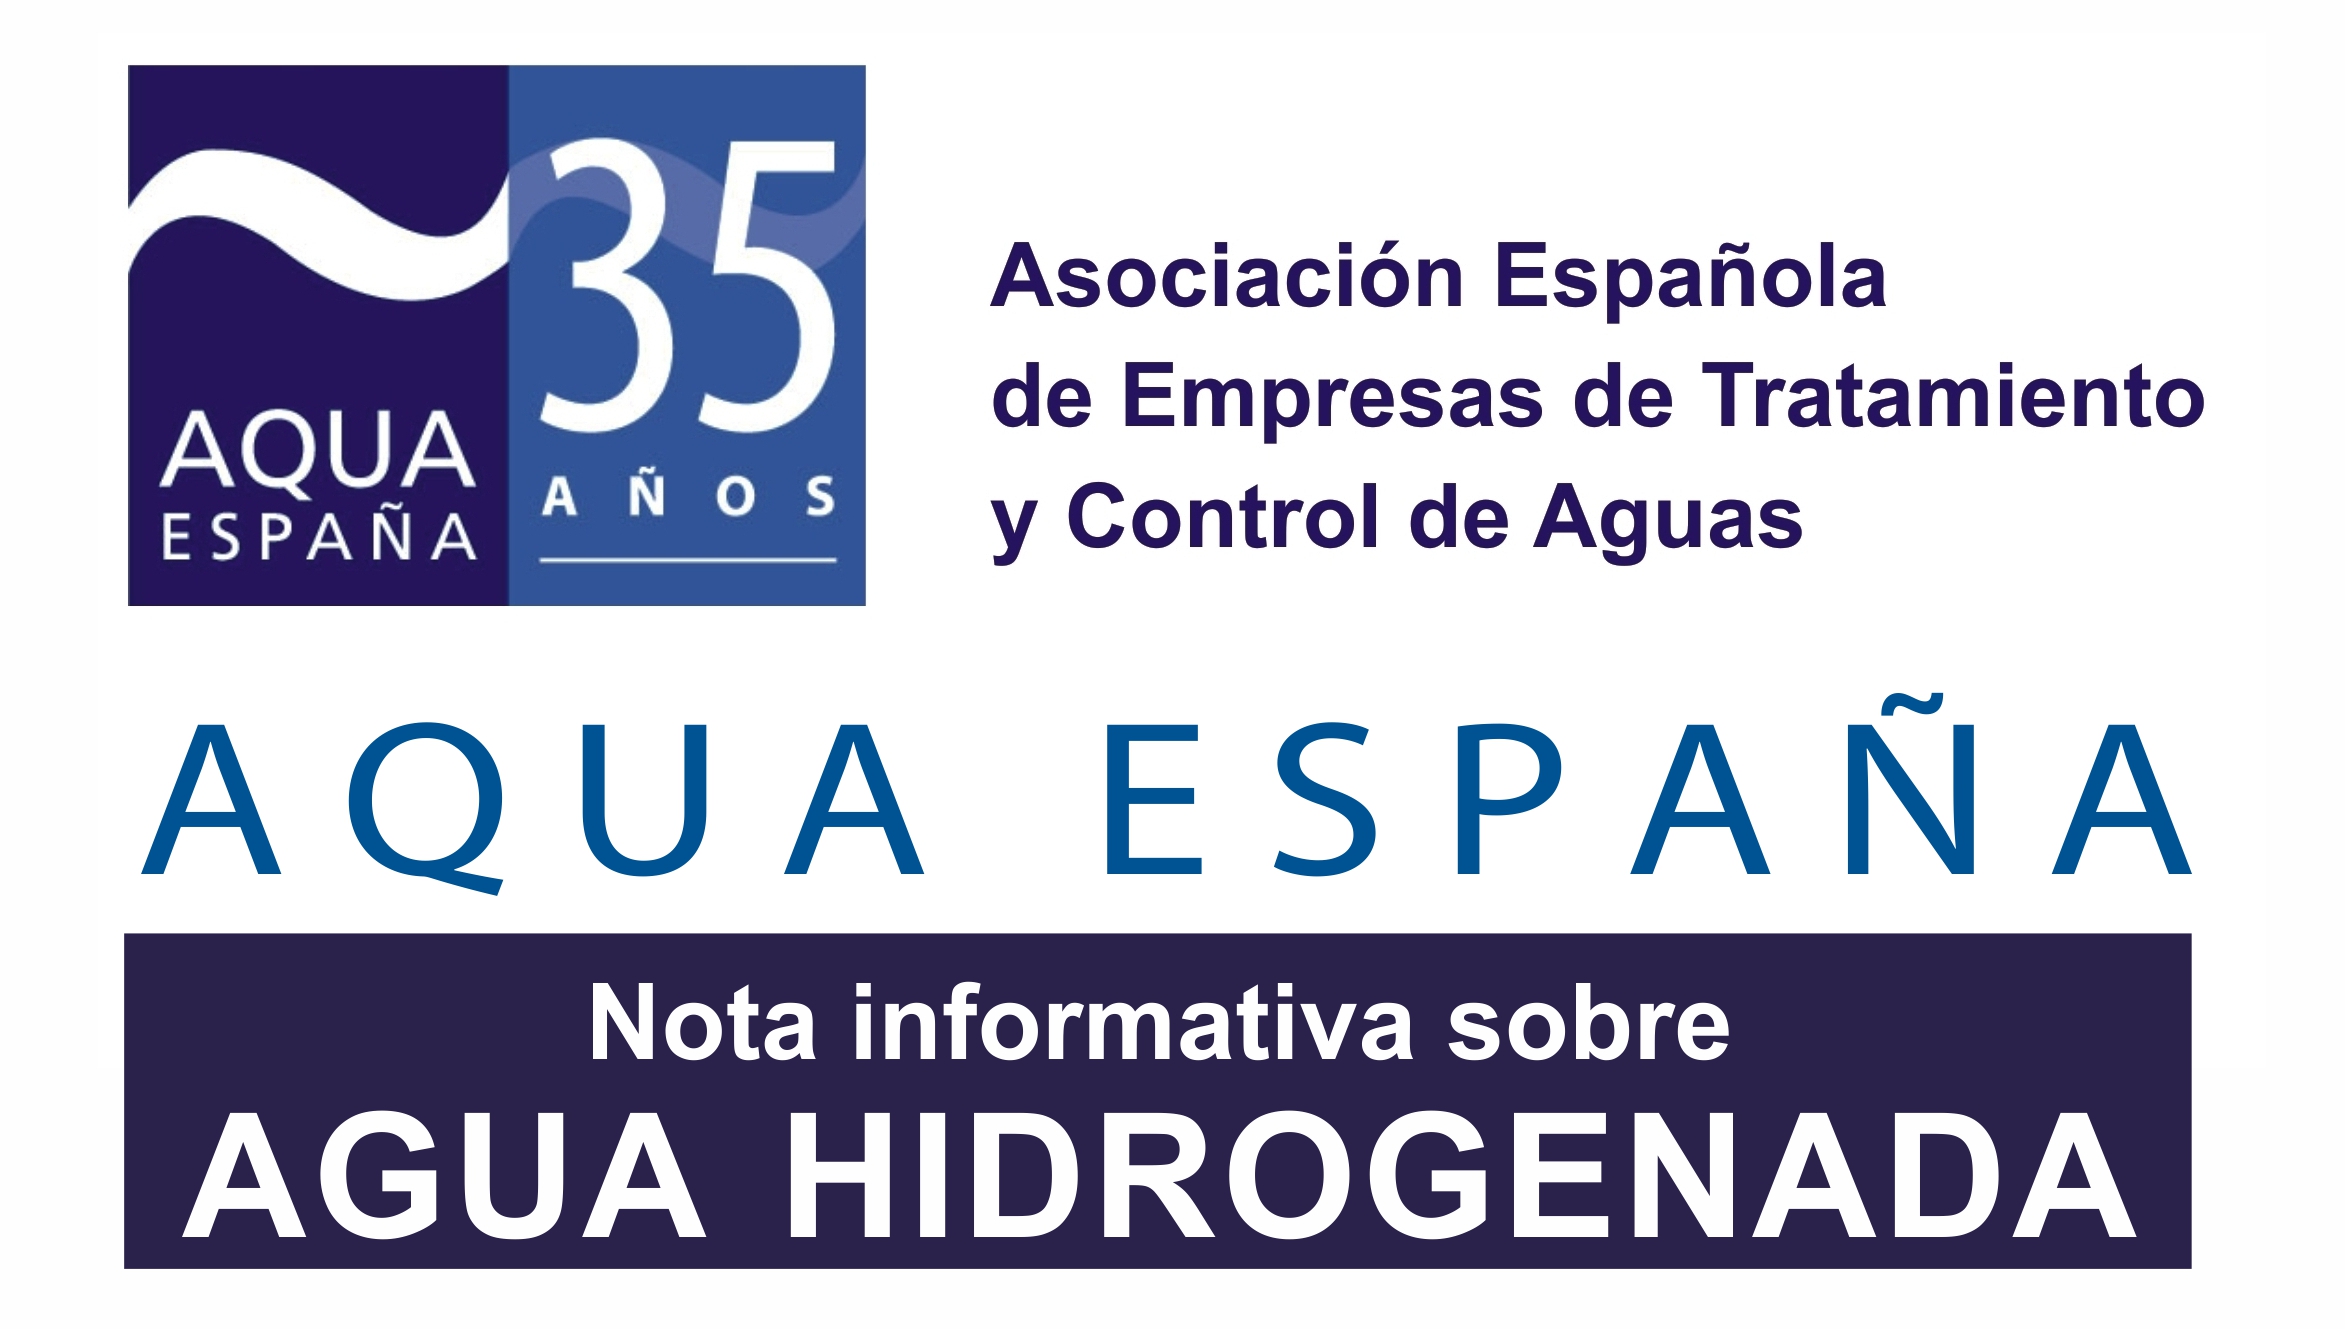 AQUA ESPAÑA: Nota informativa sobre Agua Hidrogenada